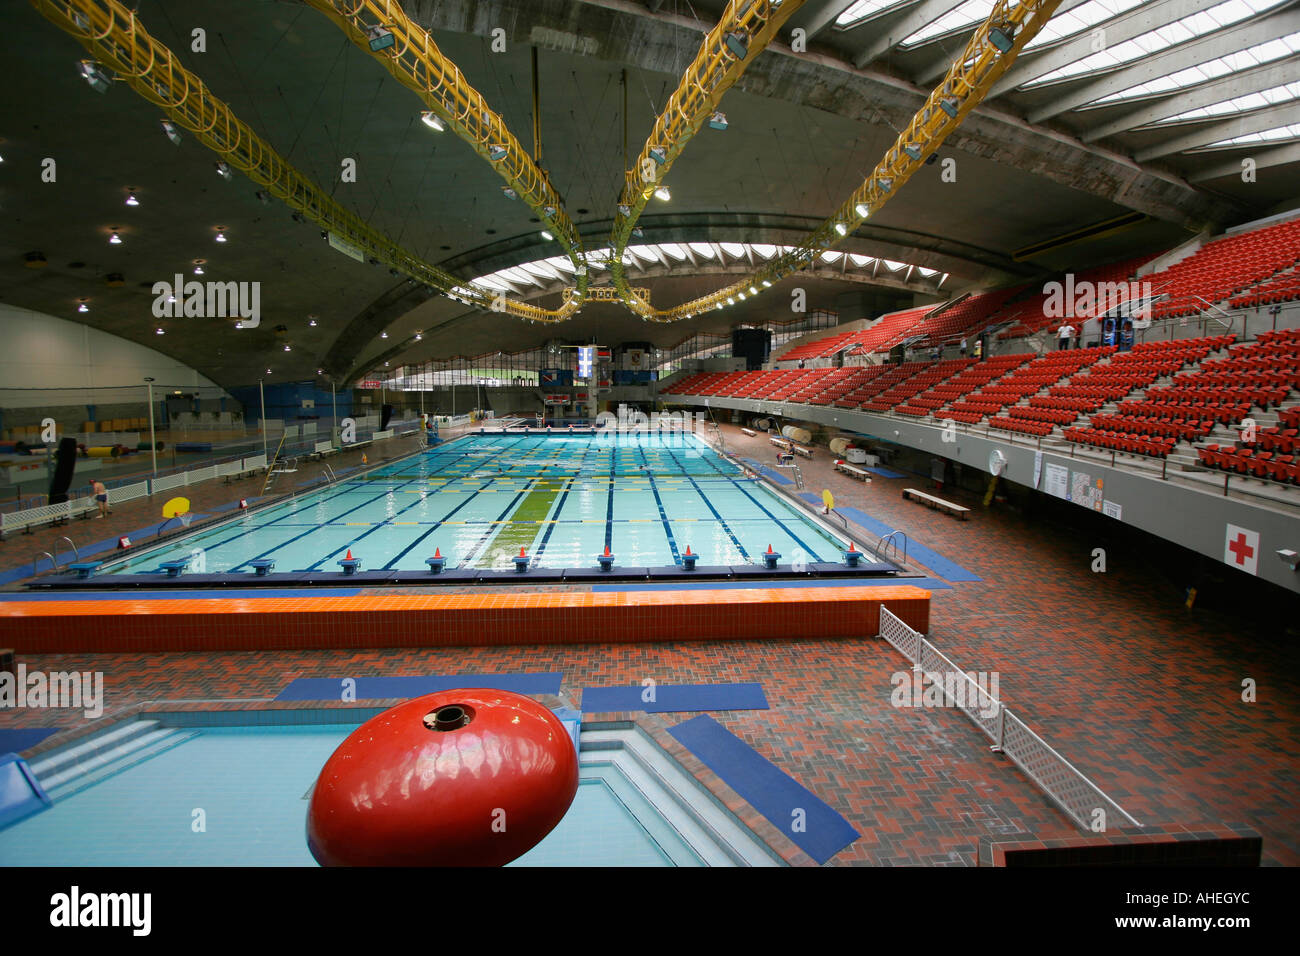 Das Olympische Schwimmbad von Montreal Kanada Stockfotografie - Alamy